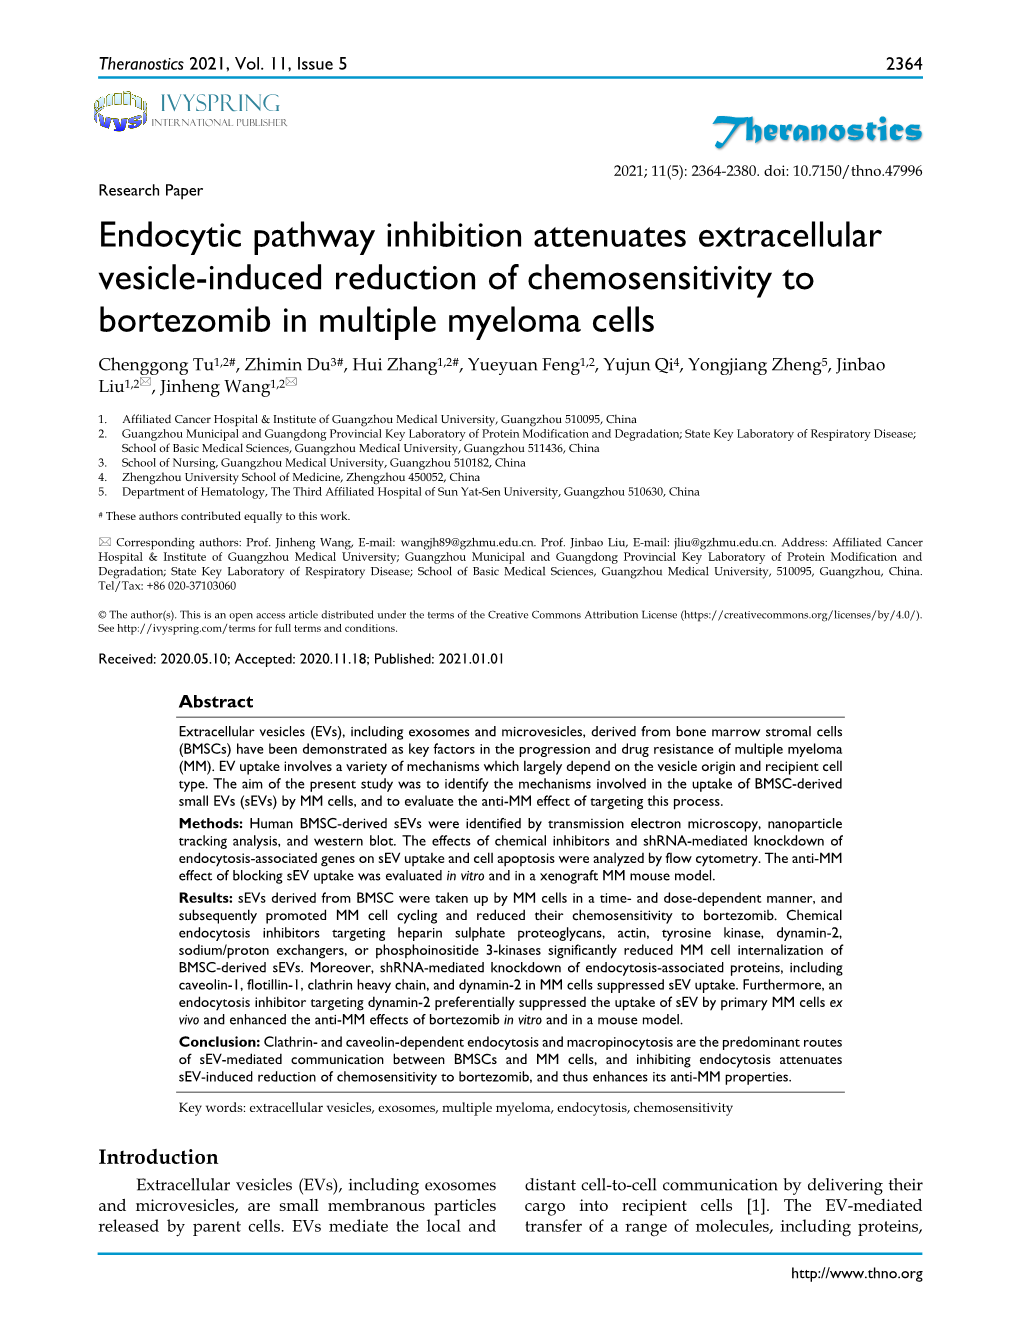 Theranostics Endocytic Pathway Inhibition Attenuates Extracellular Vesicle-Induced Reduction of Chemosensitivity to Bortezomib I